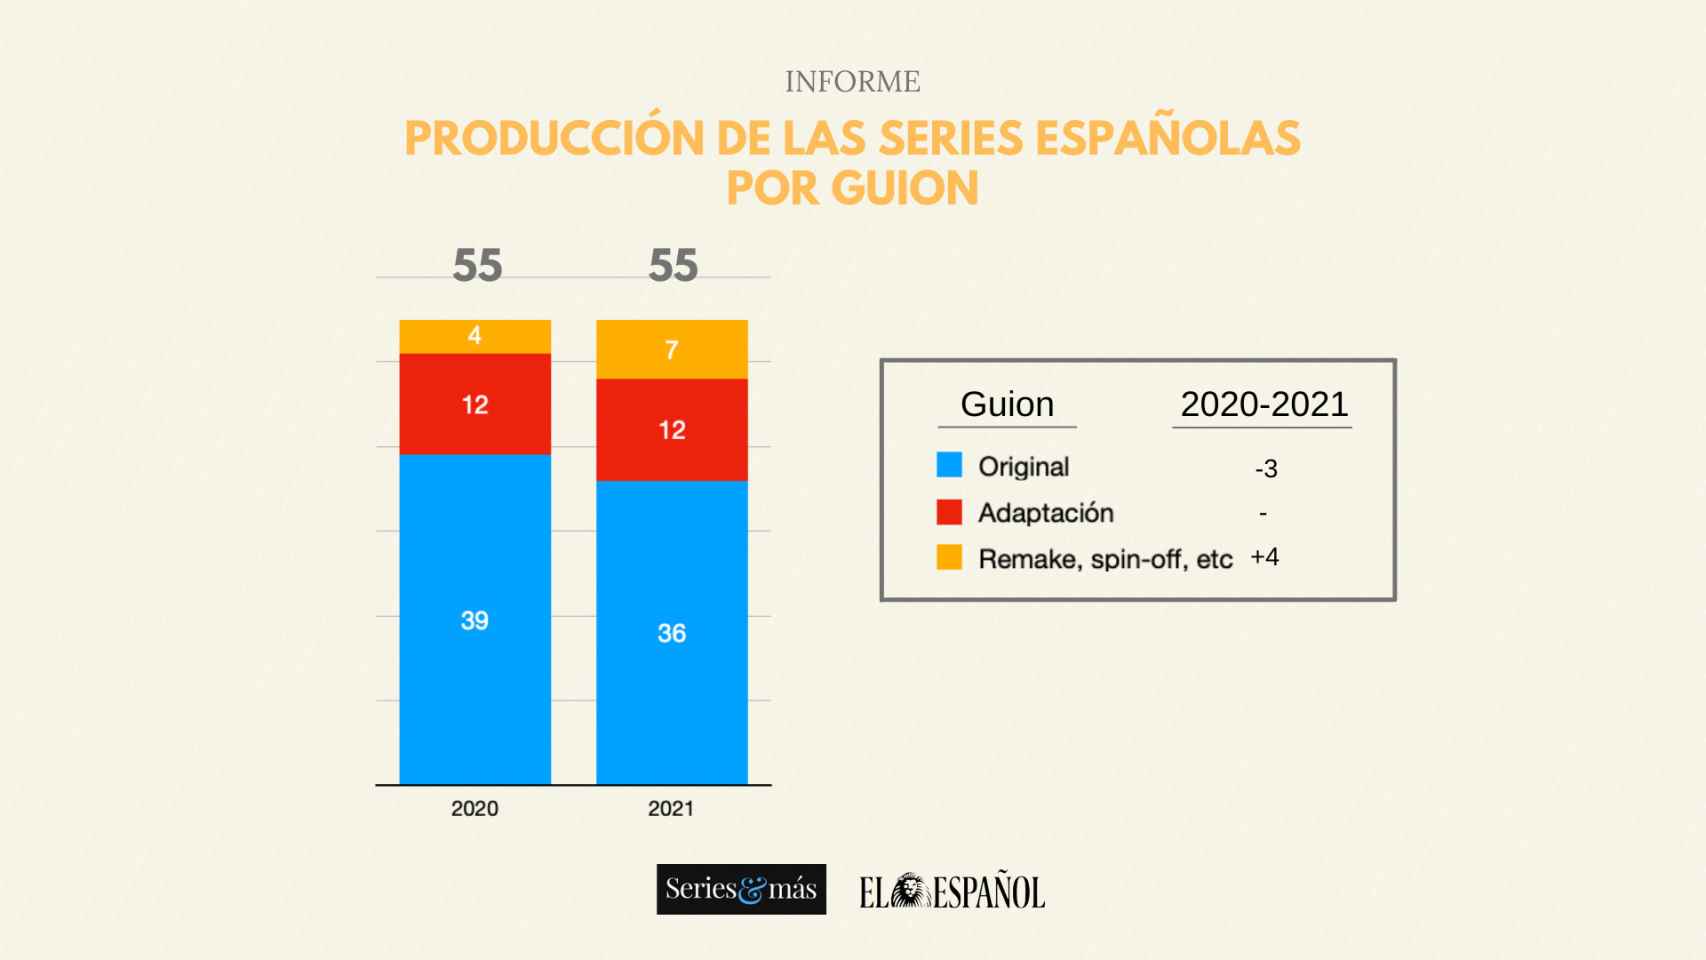 Informe de producción de las series españolas durante 2020 y 2021 por guion.